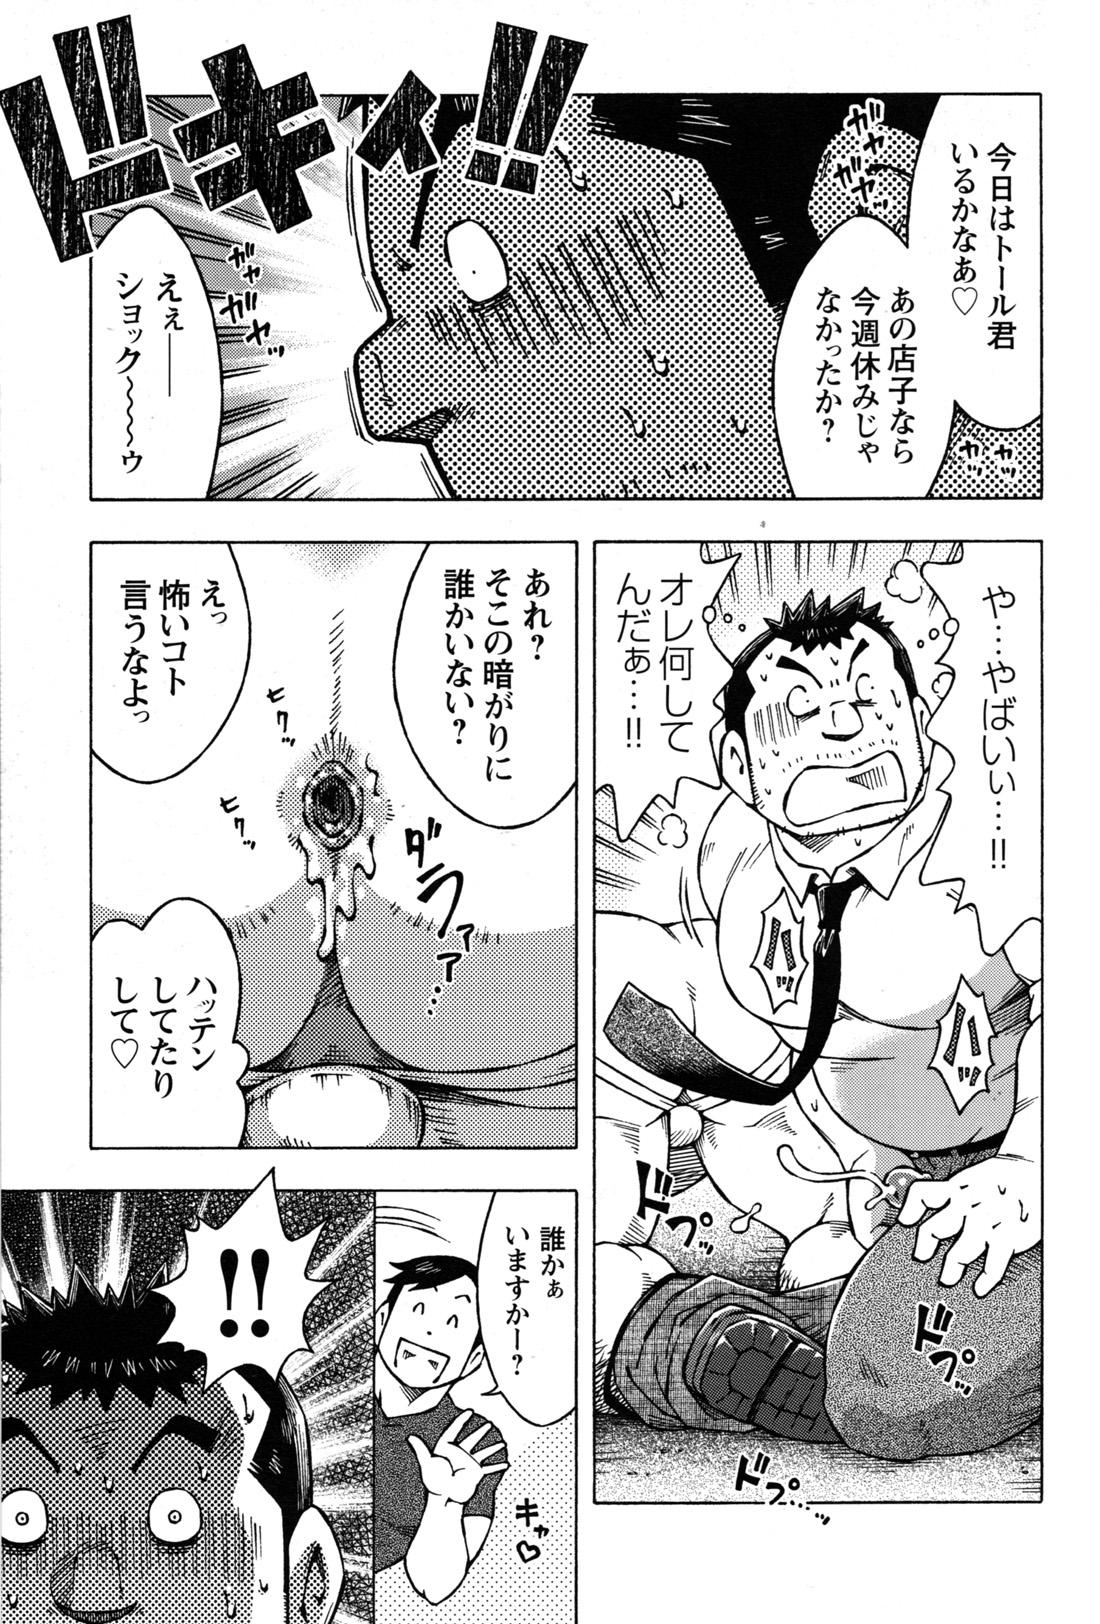 Comic G-men Gaho No.09 Gacchibi Zeme 126